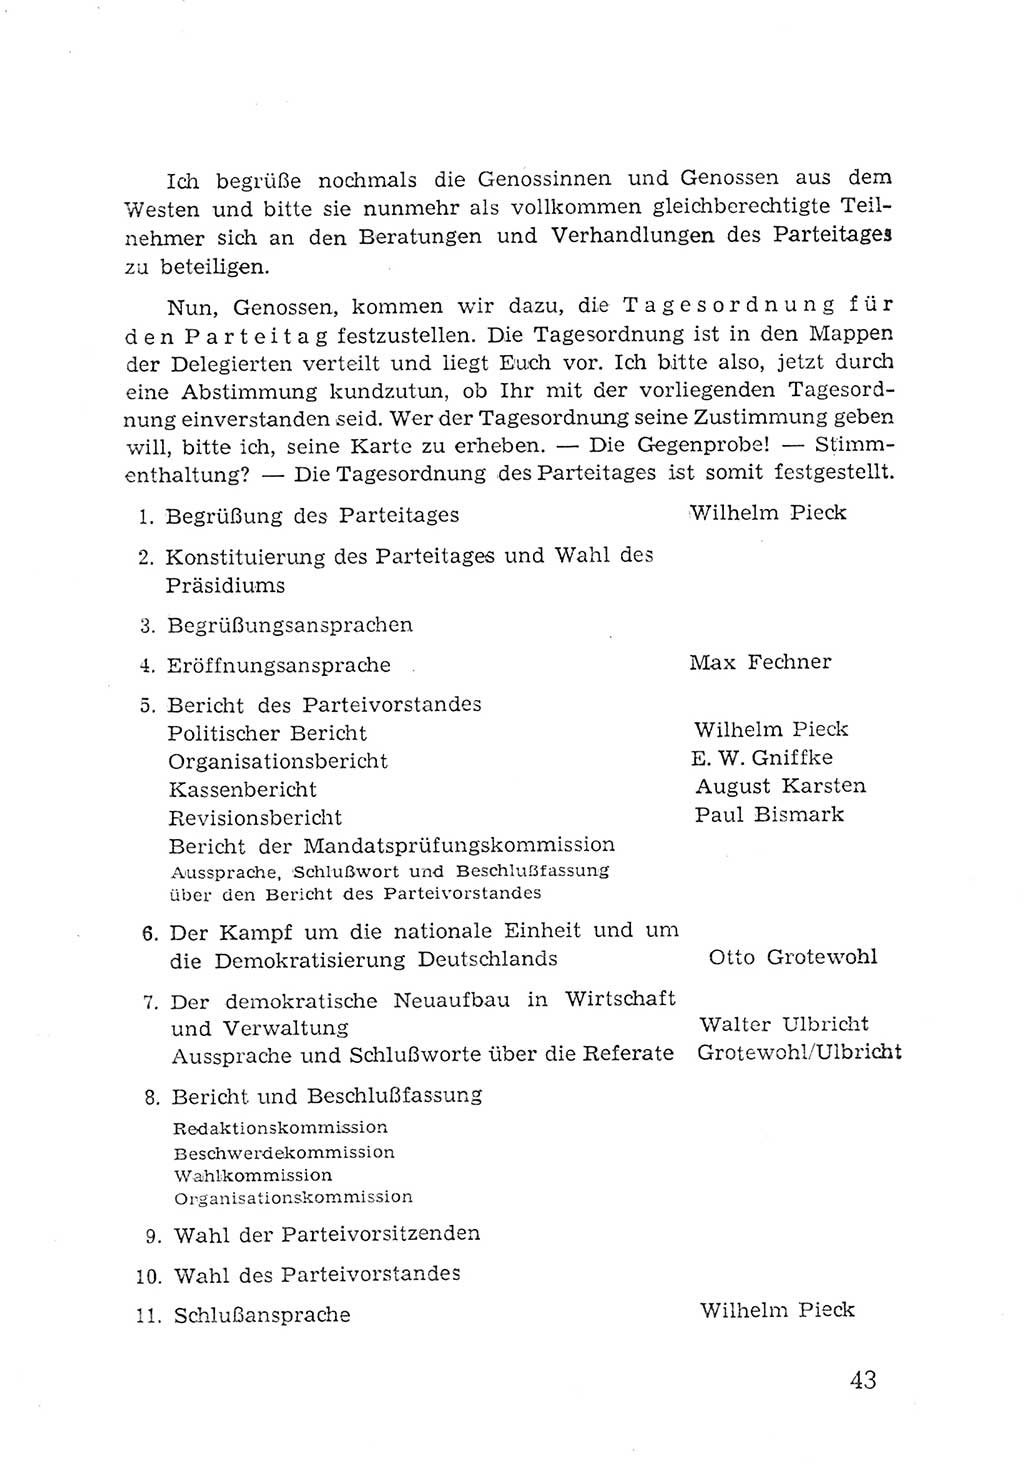 Protokoll der Verhandlungen des 2. Parteitages der Sozialistischen Einheitspartei Deutschlands (SED) [Sowjetische Besatzungszone (SBZ) Deutschlands] 1947, Seite 43 (Prot. Verh. 2. PT SED SBZ Dtl. 1947, S. 43)